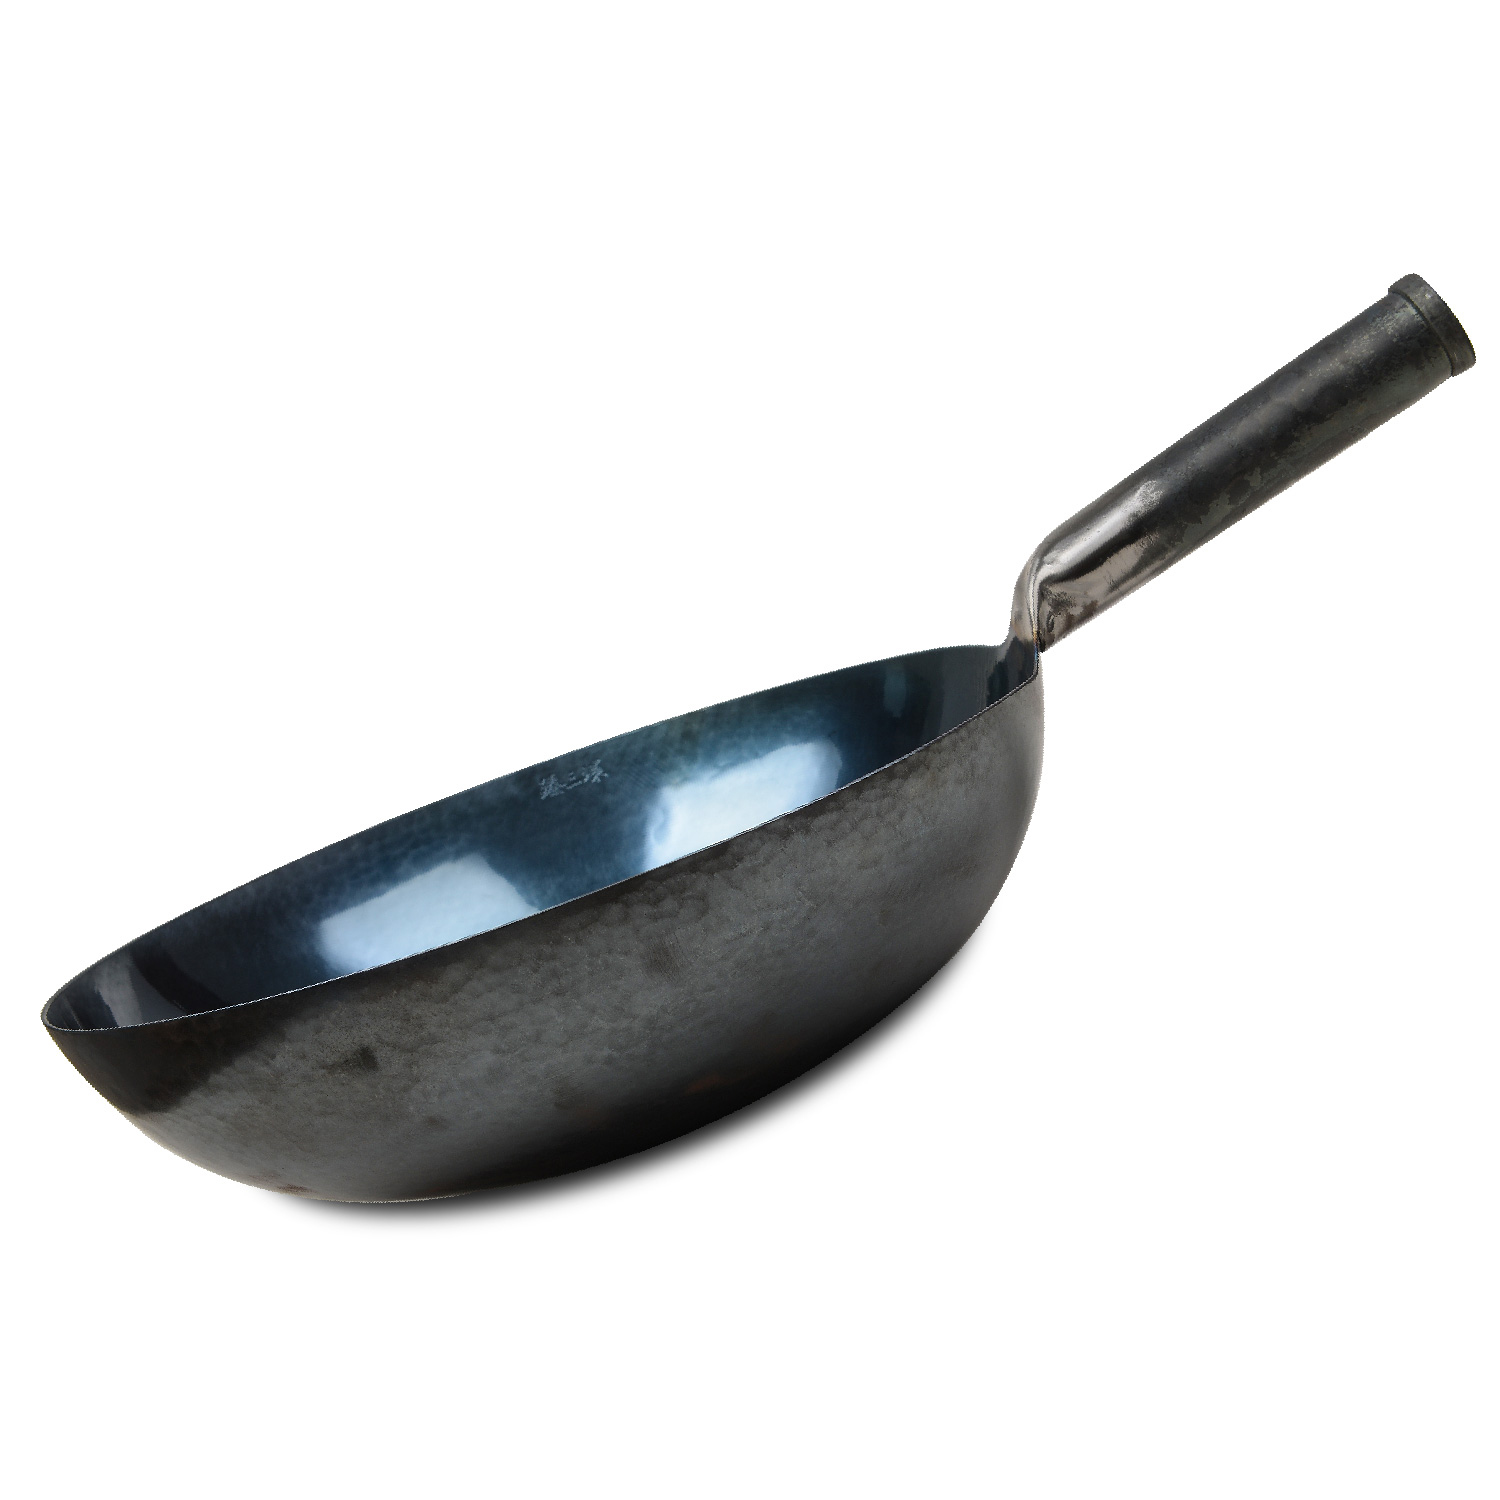 Serenita chinese 100% hand hammered iron woks stir fry pans, non